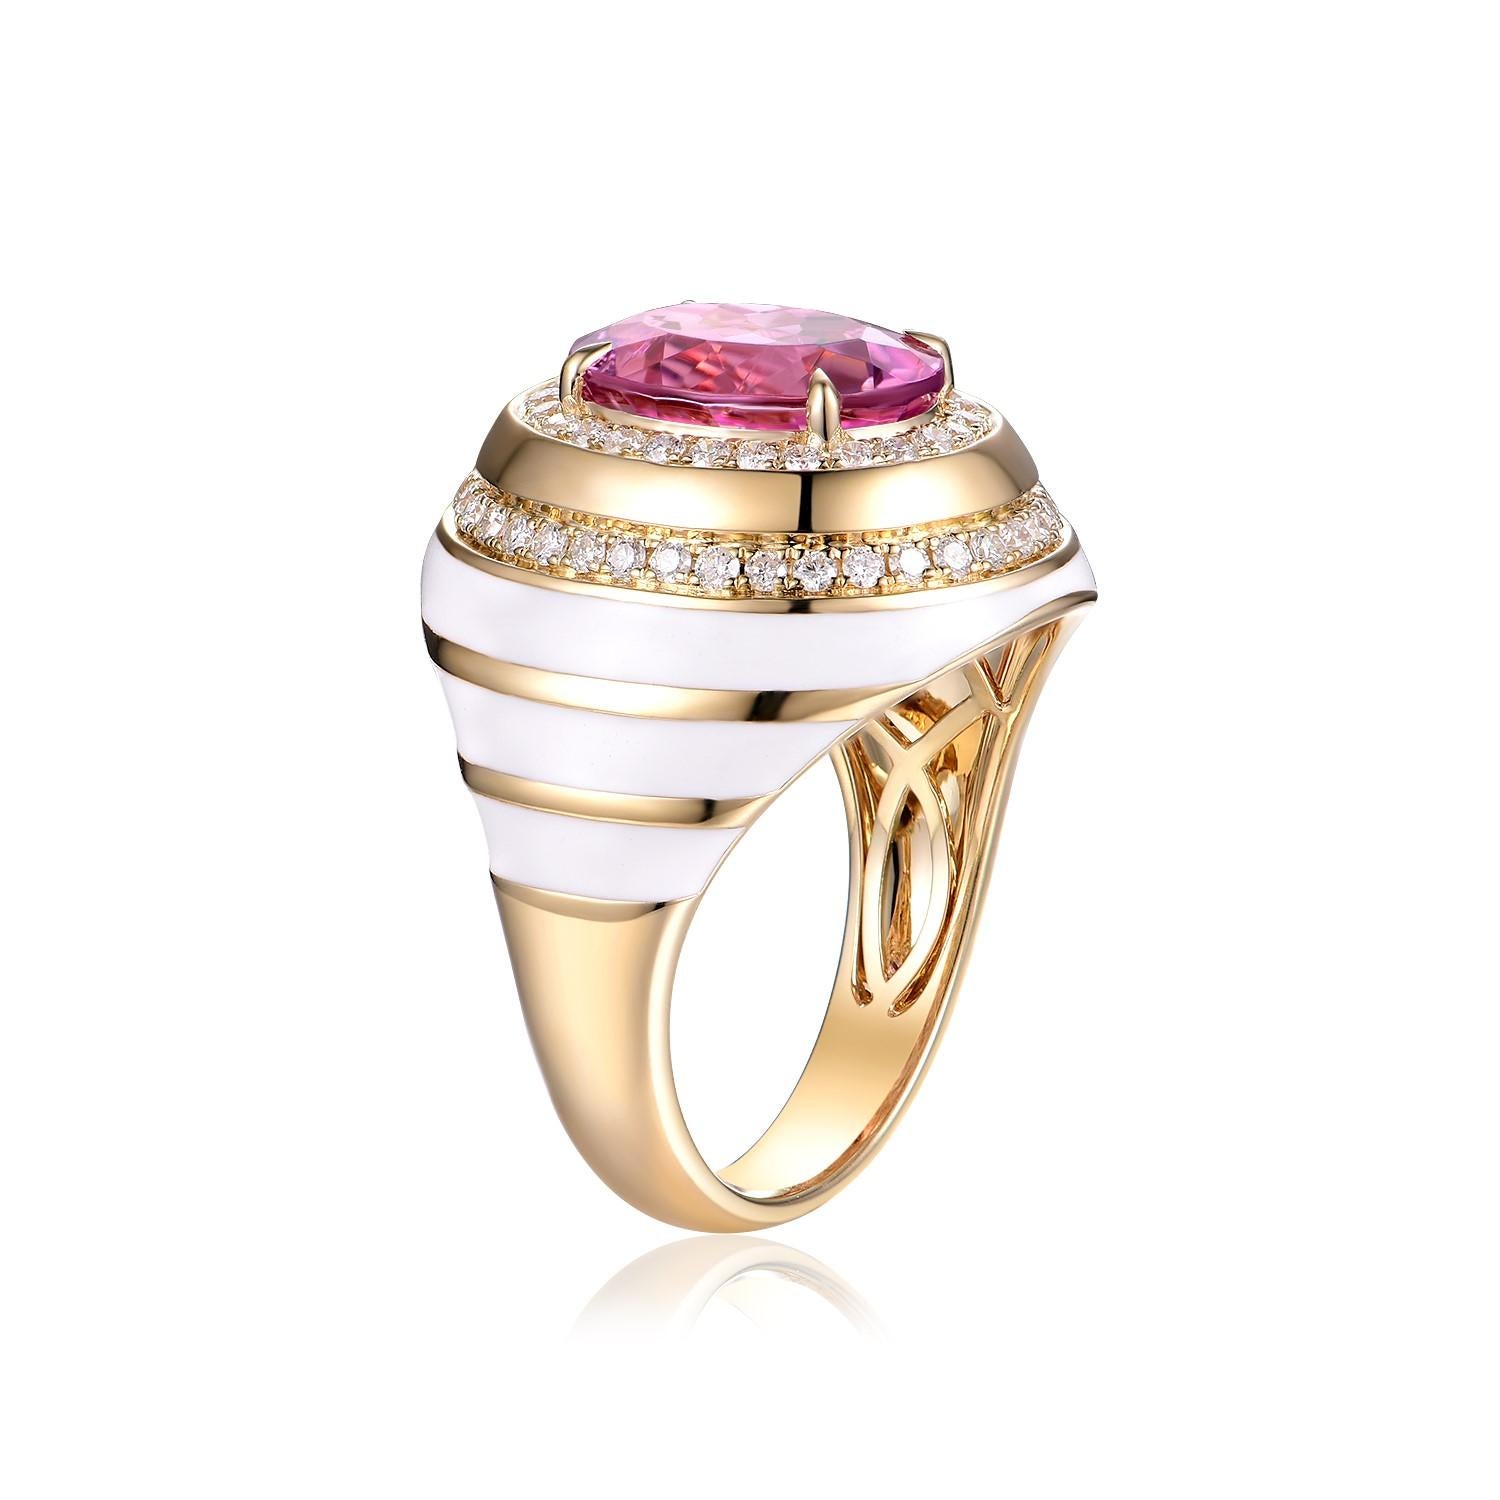 Dieser exquisite Ring in der Größe US 6,75 (Größenanpassung möglich) präsentiert einen atemberaubenden ovalen Turmalin von 3,45 Karat als Herzstück. Der Turmalin strahlt in einem satten Rosa und versprüht eine Aura von Luxus und Charme. Der zentrale